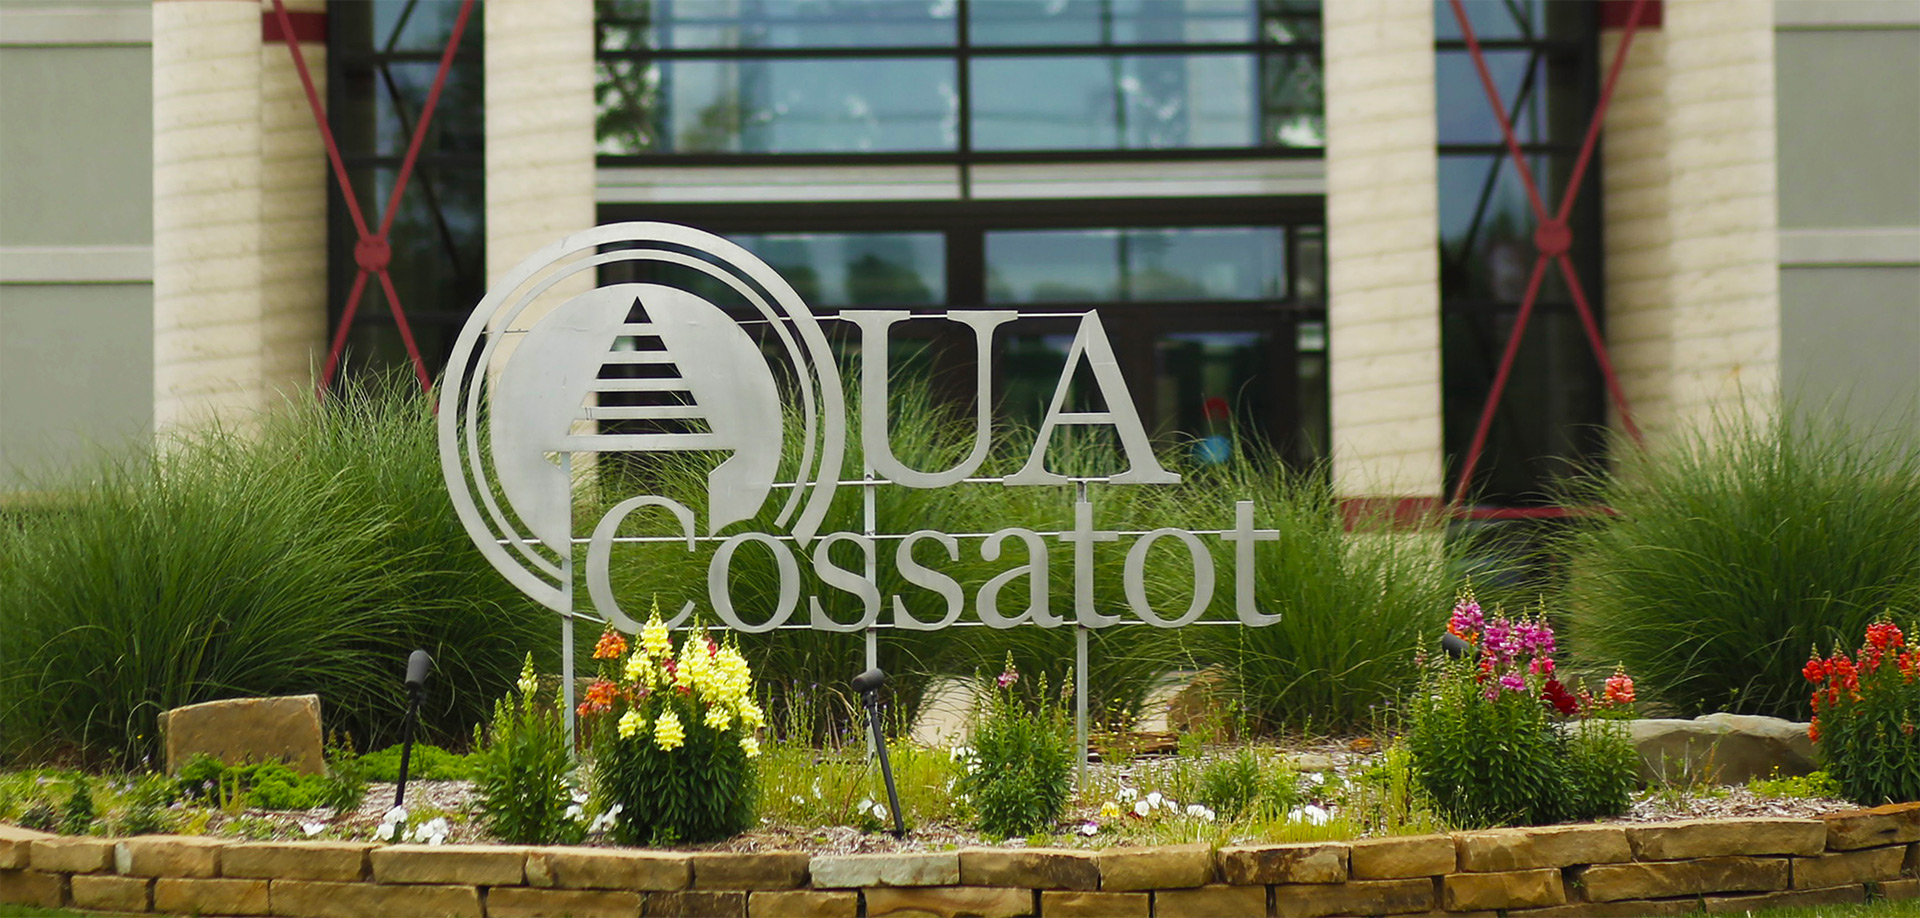 Cossatot Campus